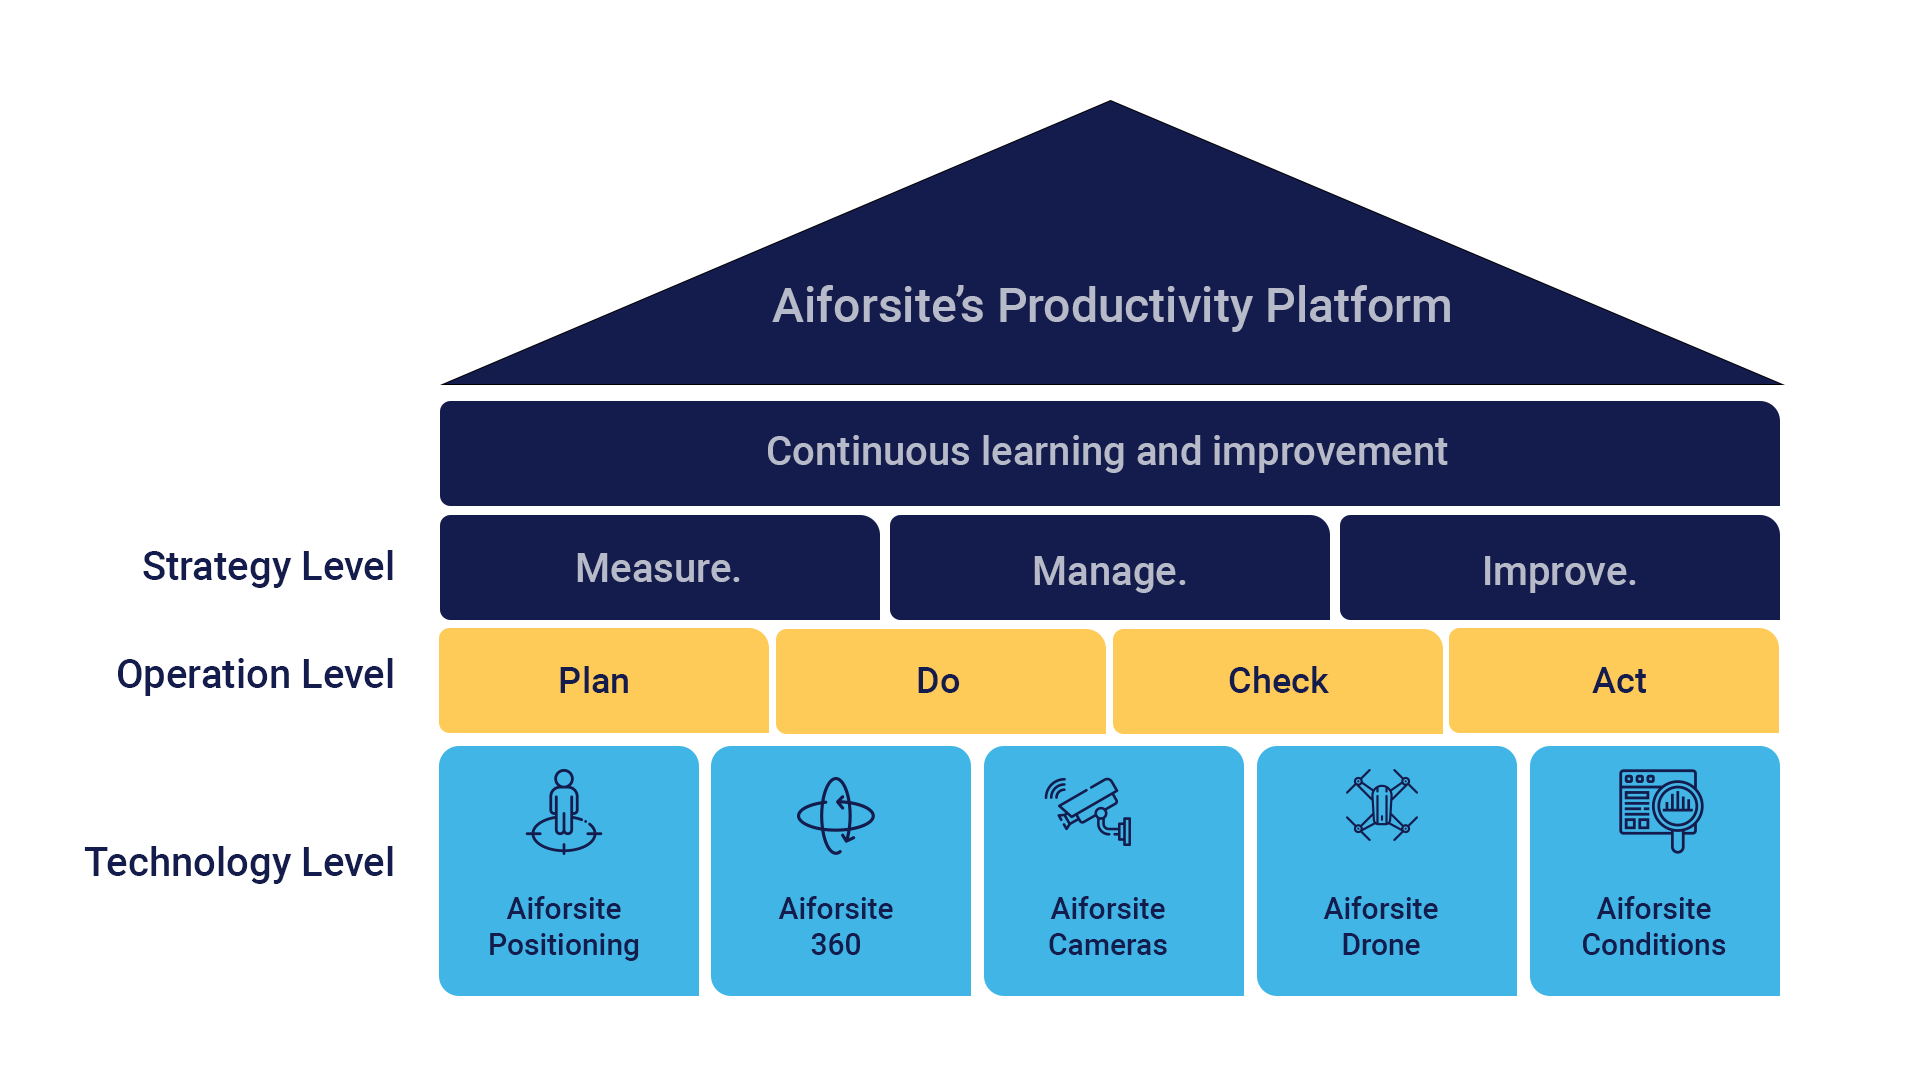 Aiforsite Productivity Platform as a house